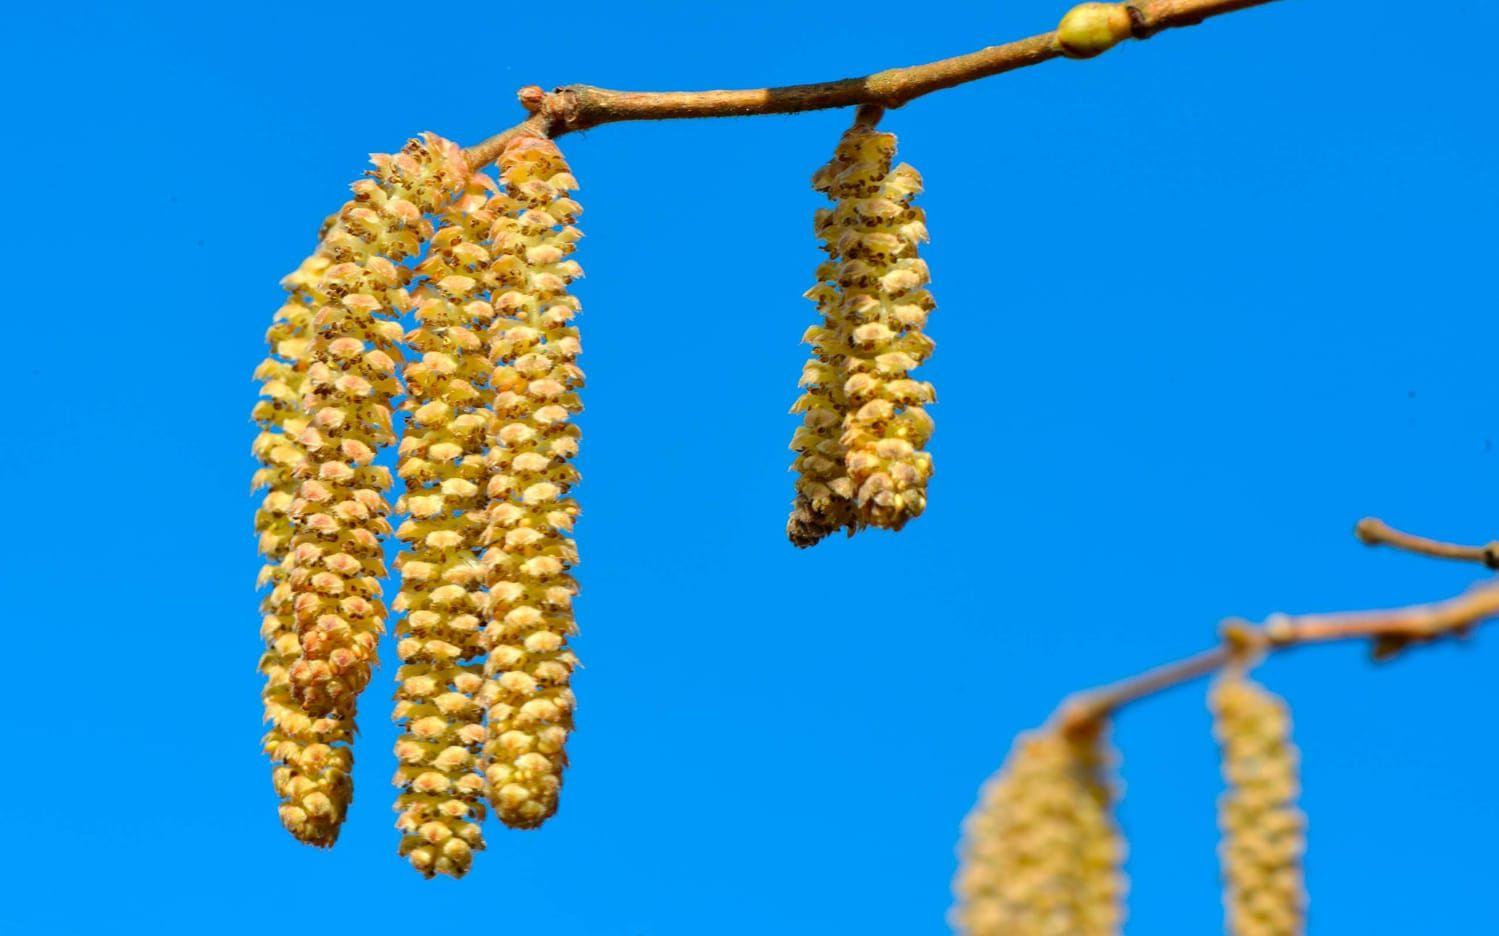 En av vårens tidigaste blommor finns på hasselbusken. Långt innan tussilagon lyser gul har hasseln släppt sitt pollen. Bild: Annika Karlbom